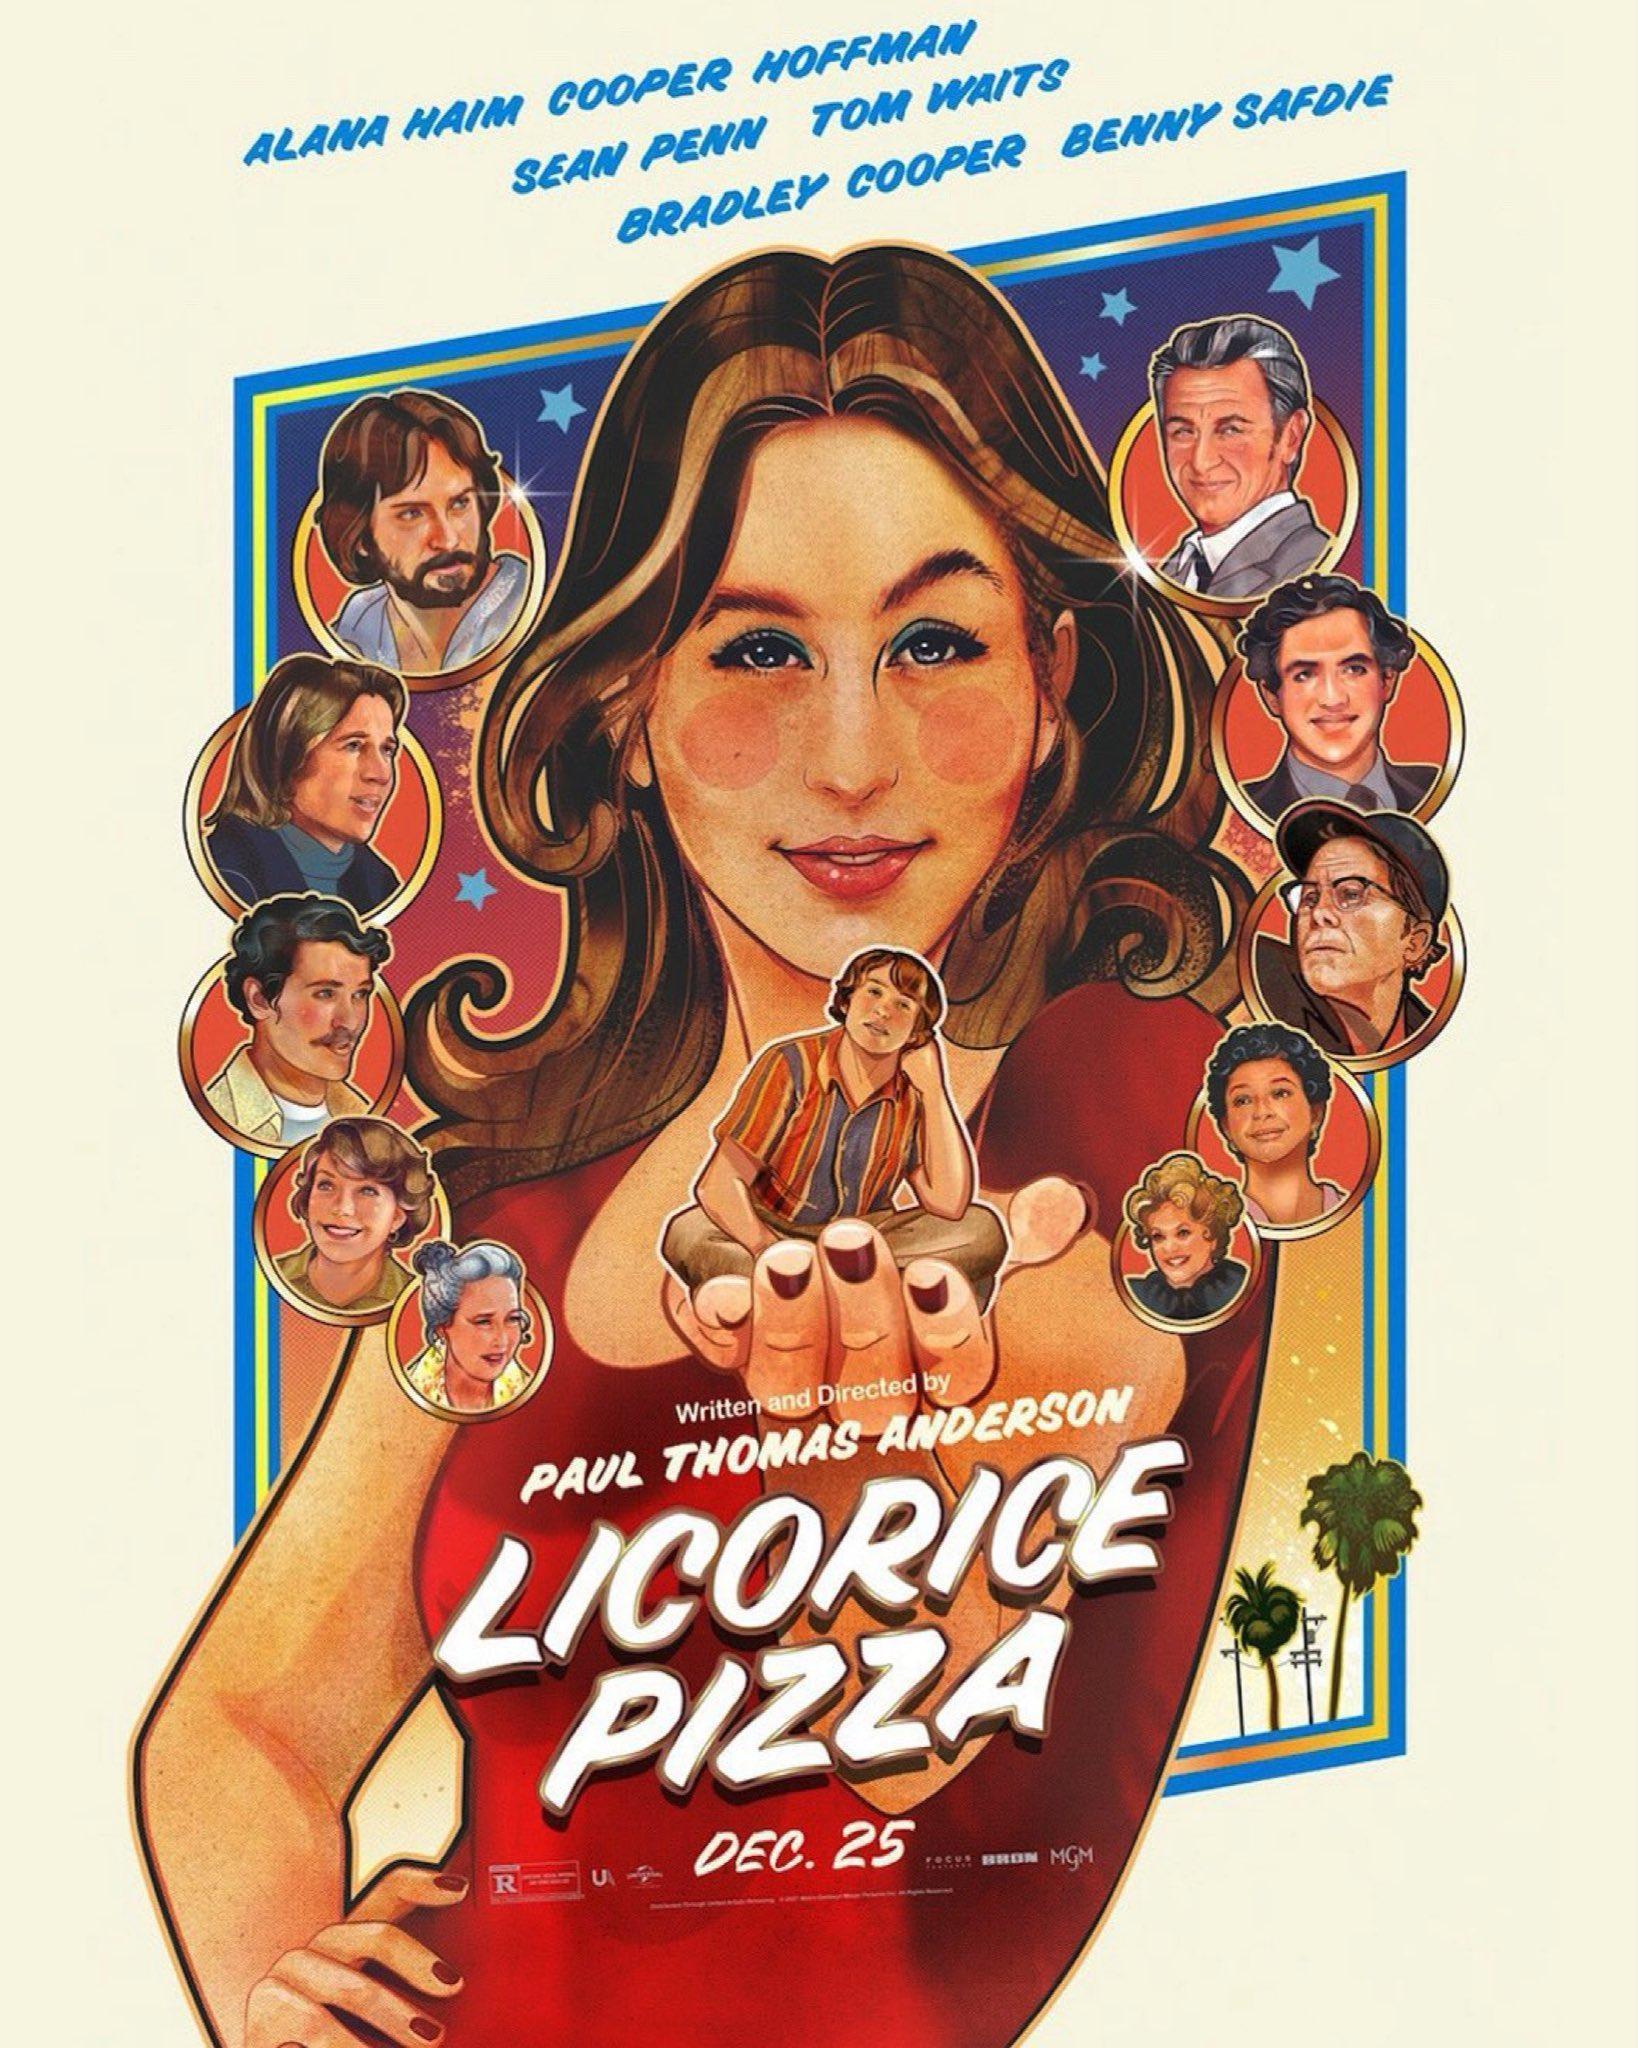 Licorice Pizza: Plak mağazasının retro ürünlerini toparlayan büyülü ve duygusal bir gençlik filmi